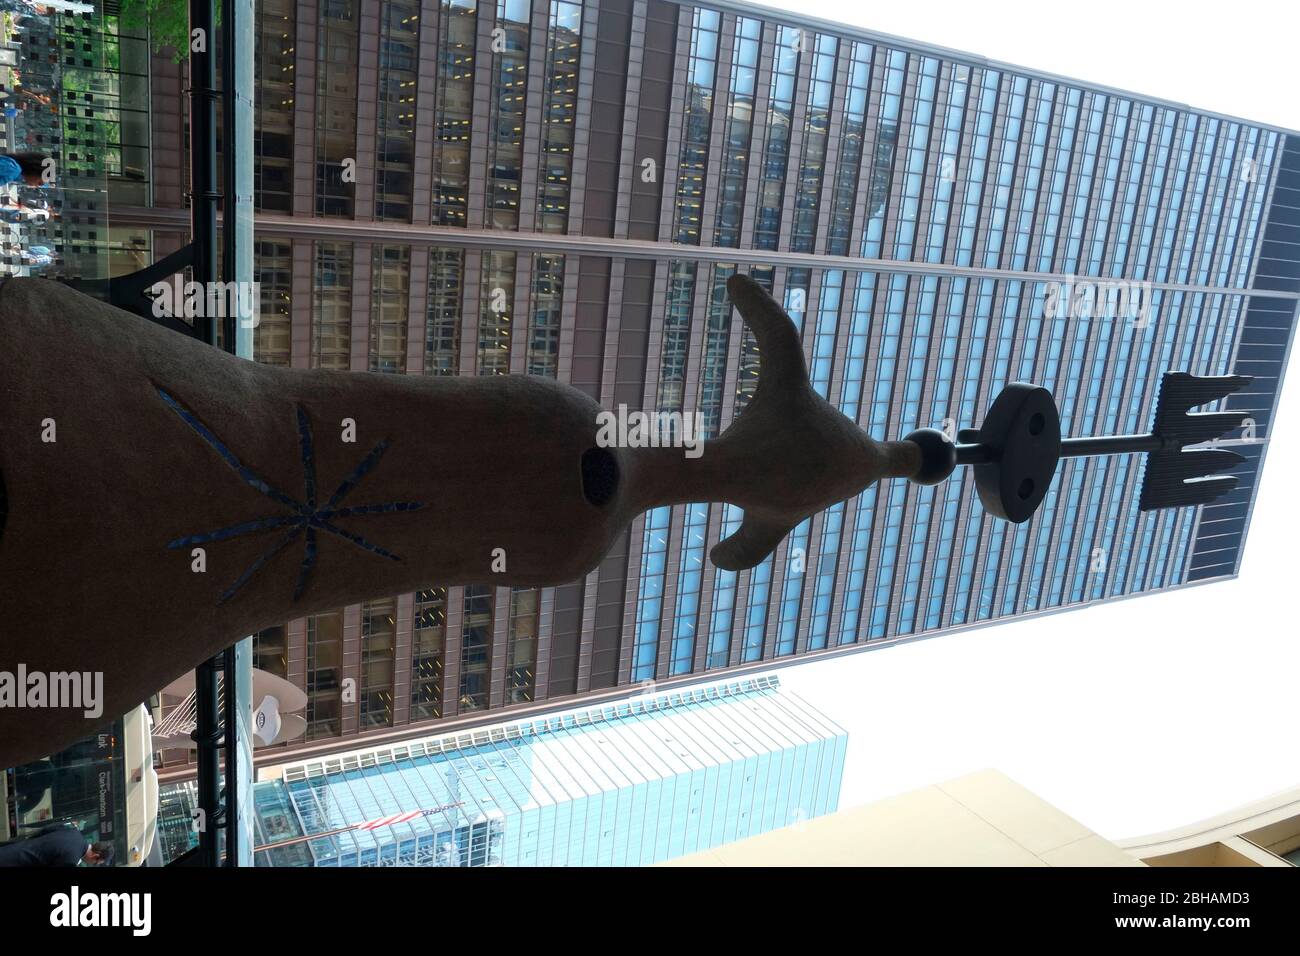 Miro's Chicago (ursprünglich die Sonne, der Mond und ein Stern genannt, ist eine Skulptur von Joan Miro. Es ist 39 Fuß (12 m) hoch und besteht aus Stahl, Drahtgeflecht, Beton, Bronze und Keramikfliesen. Stockfoto